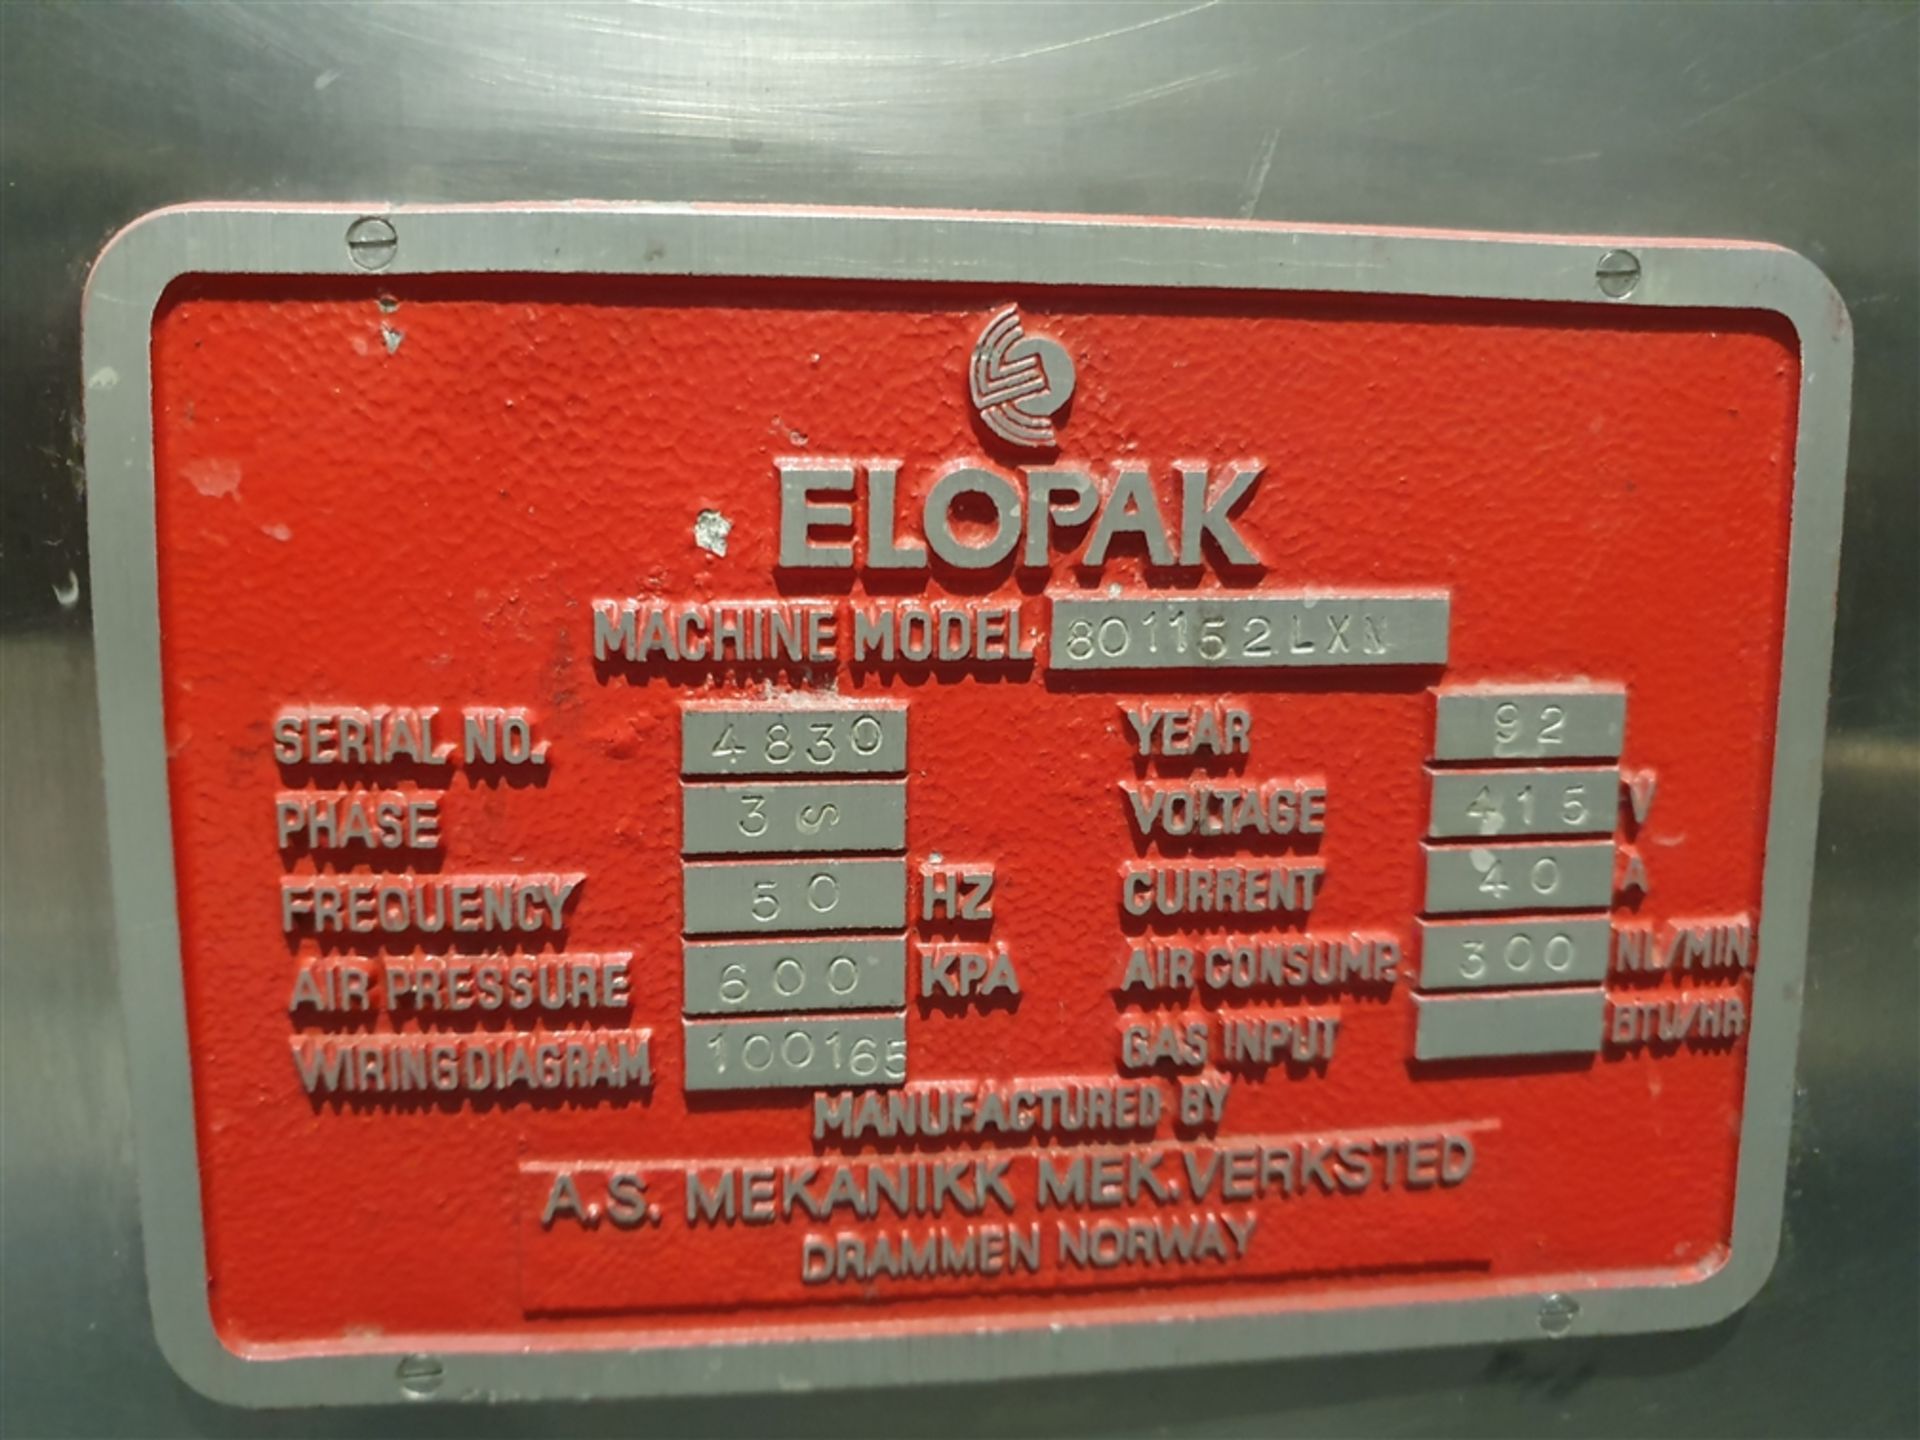 Elopak Shrink Wrapper - Model 801152 LXN - Image 3 of 7